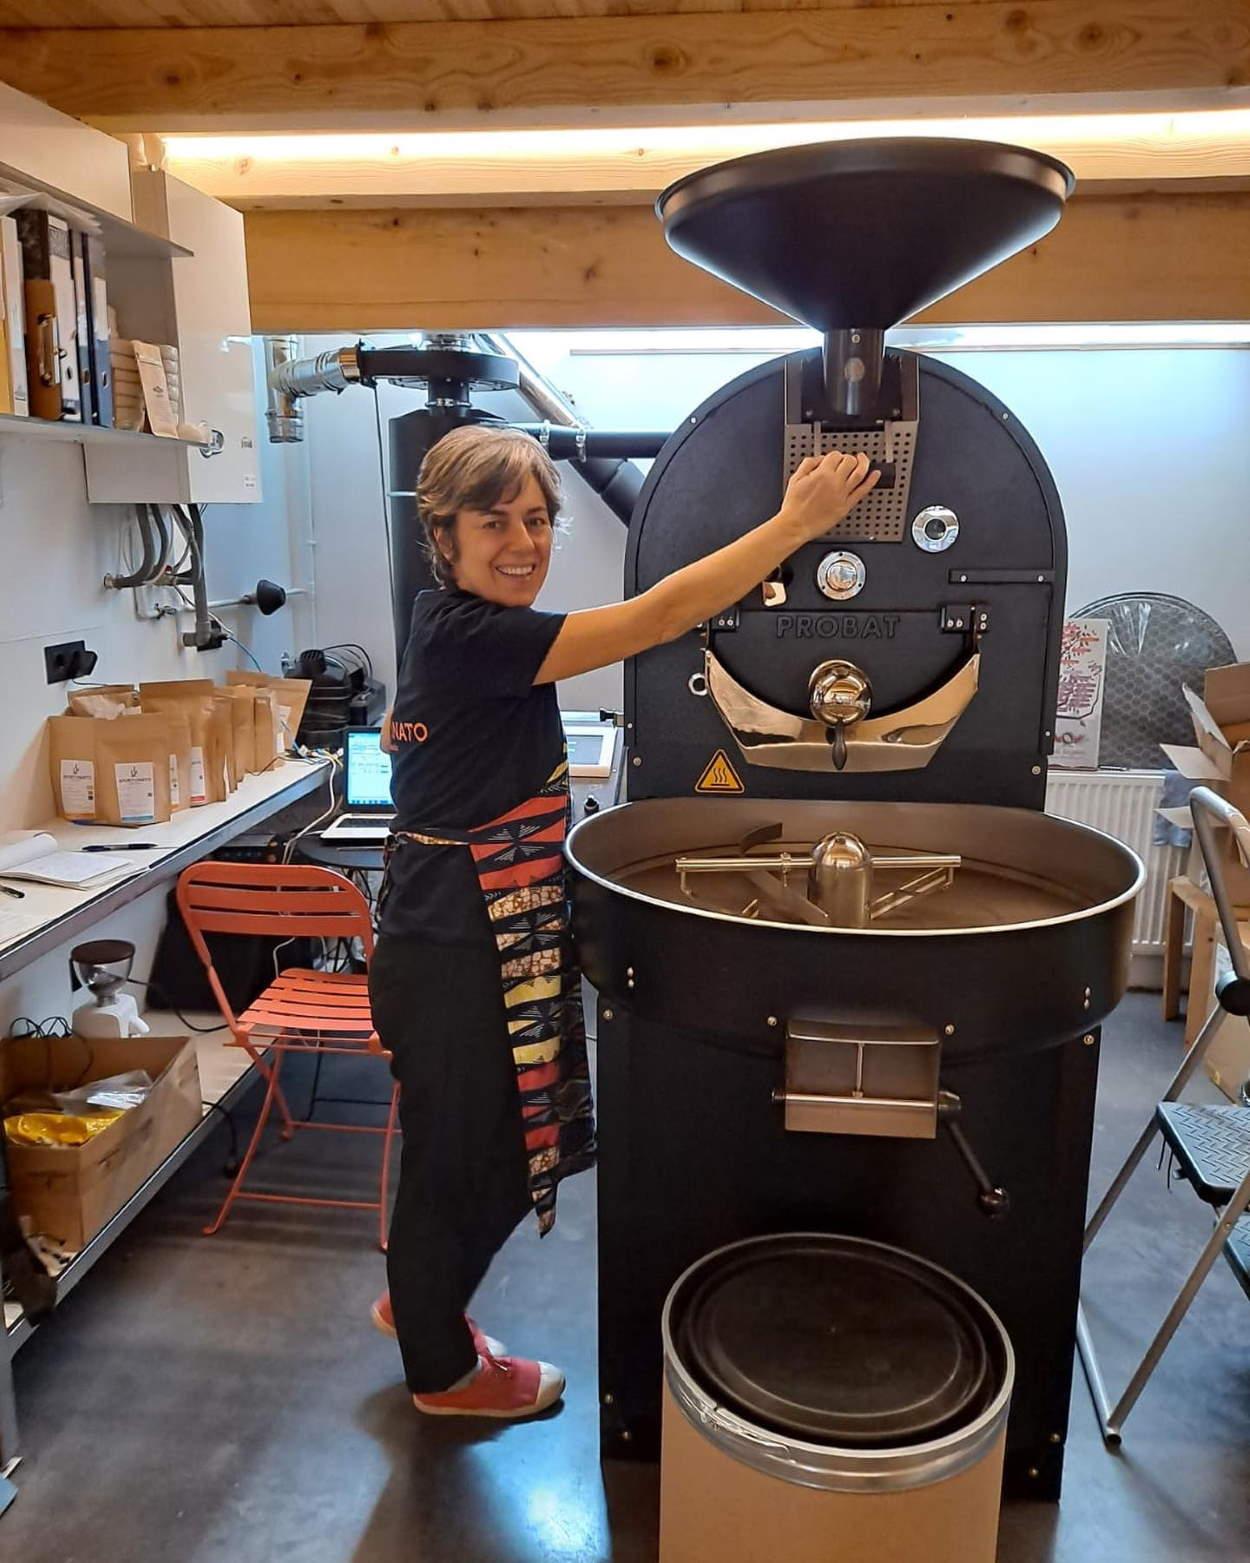 Cristina, coffe Roaster de Afortunato, lleva más de 20 años dedicada al sector y ven su producto online a través de Ubbora